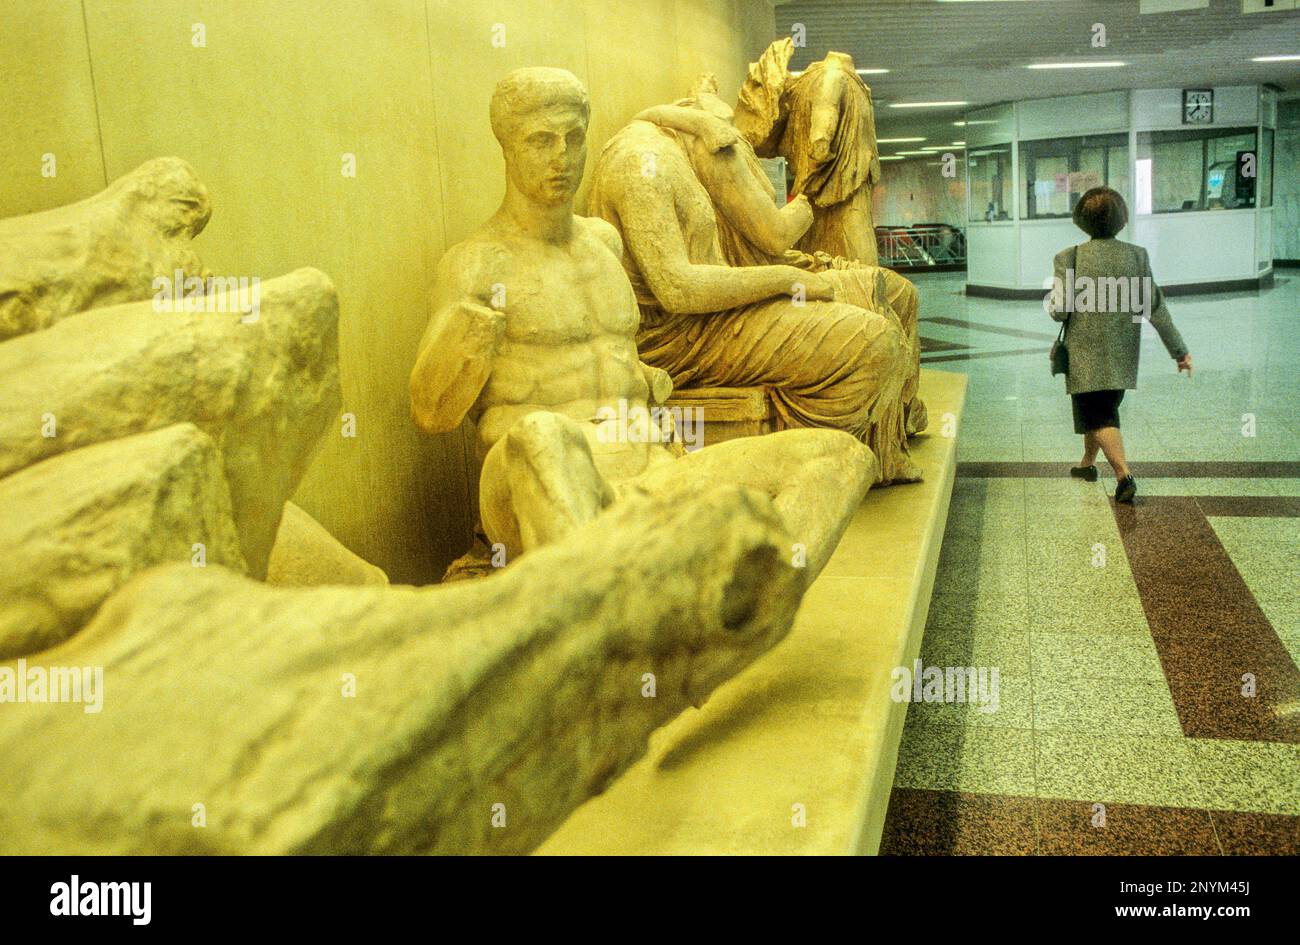 La metropolitana, stazione dell'Acropoli. Qui trovate il resto archeologico nel prolungamento della metropolitana nel 2004 sono esposti, Atene, Grecia, Eur Foto Stock